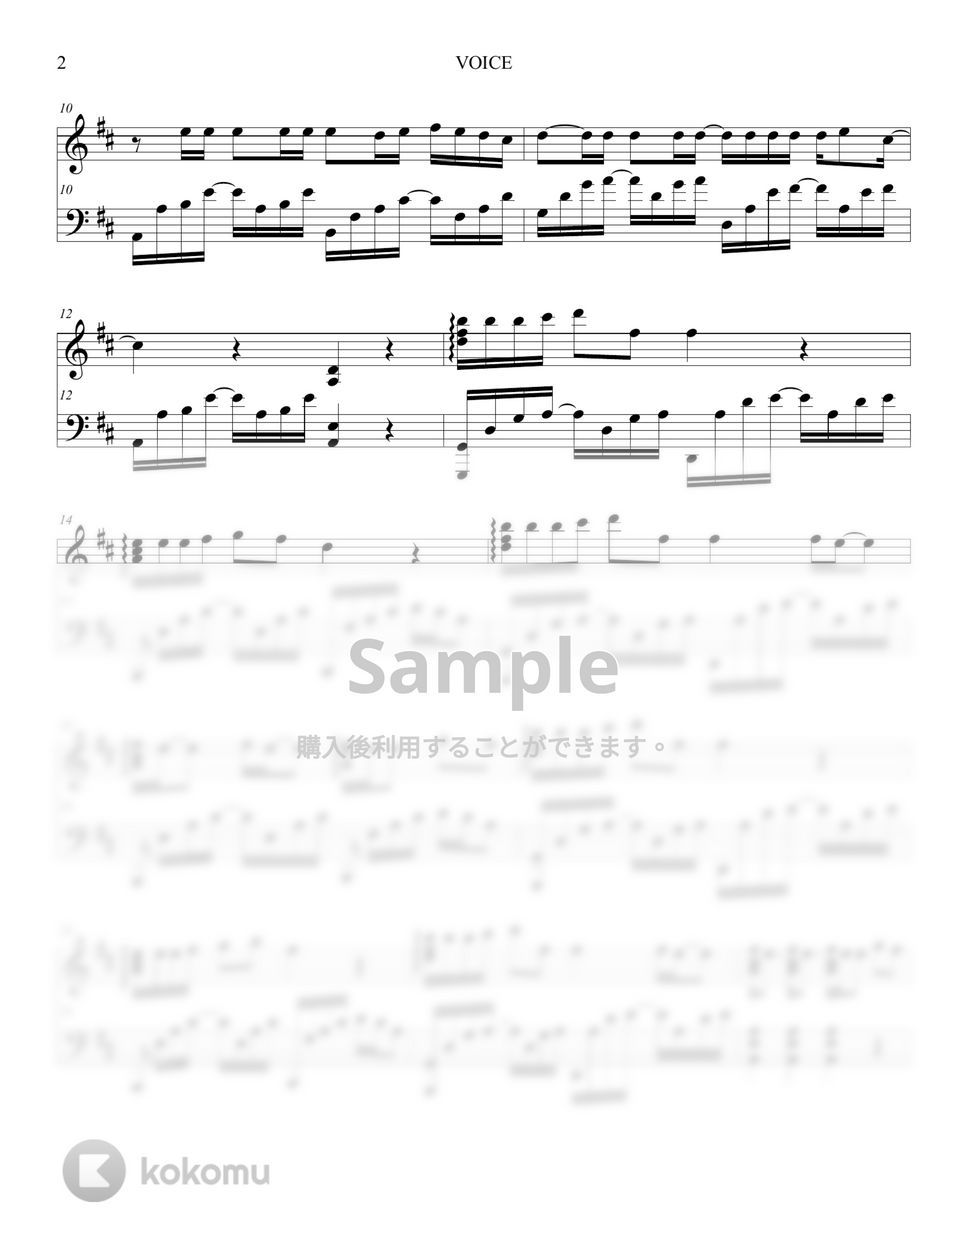 テヨン - VOICE by Lunar Piano